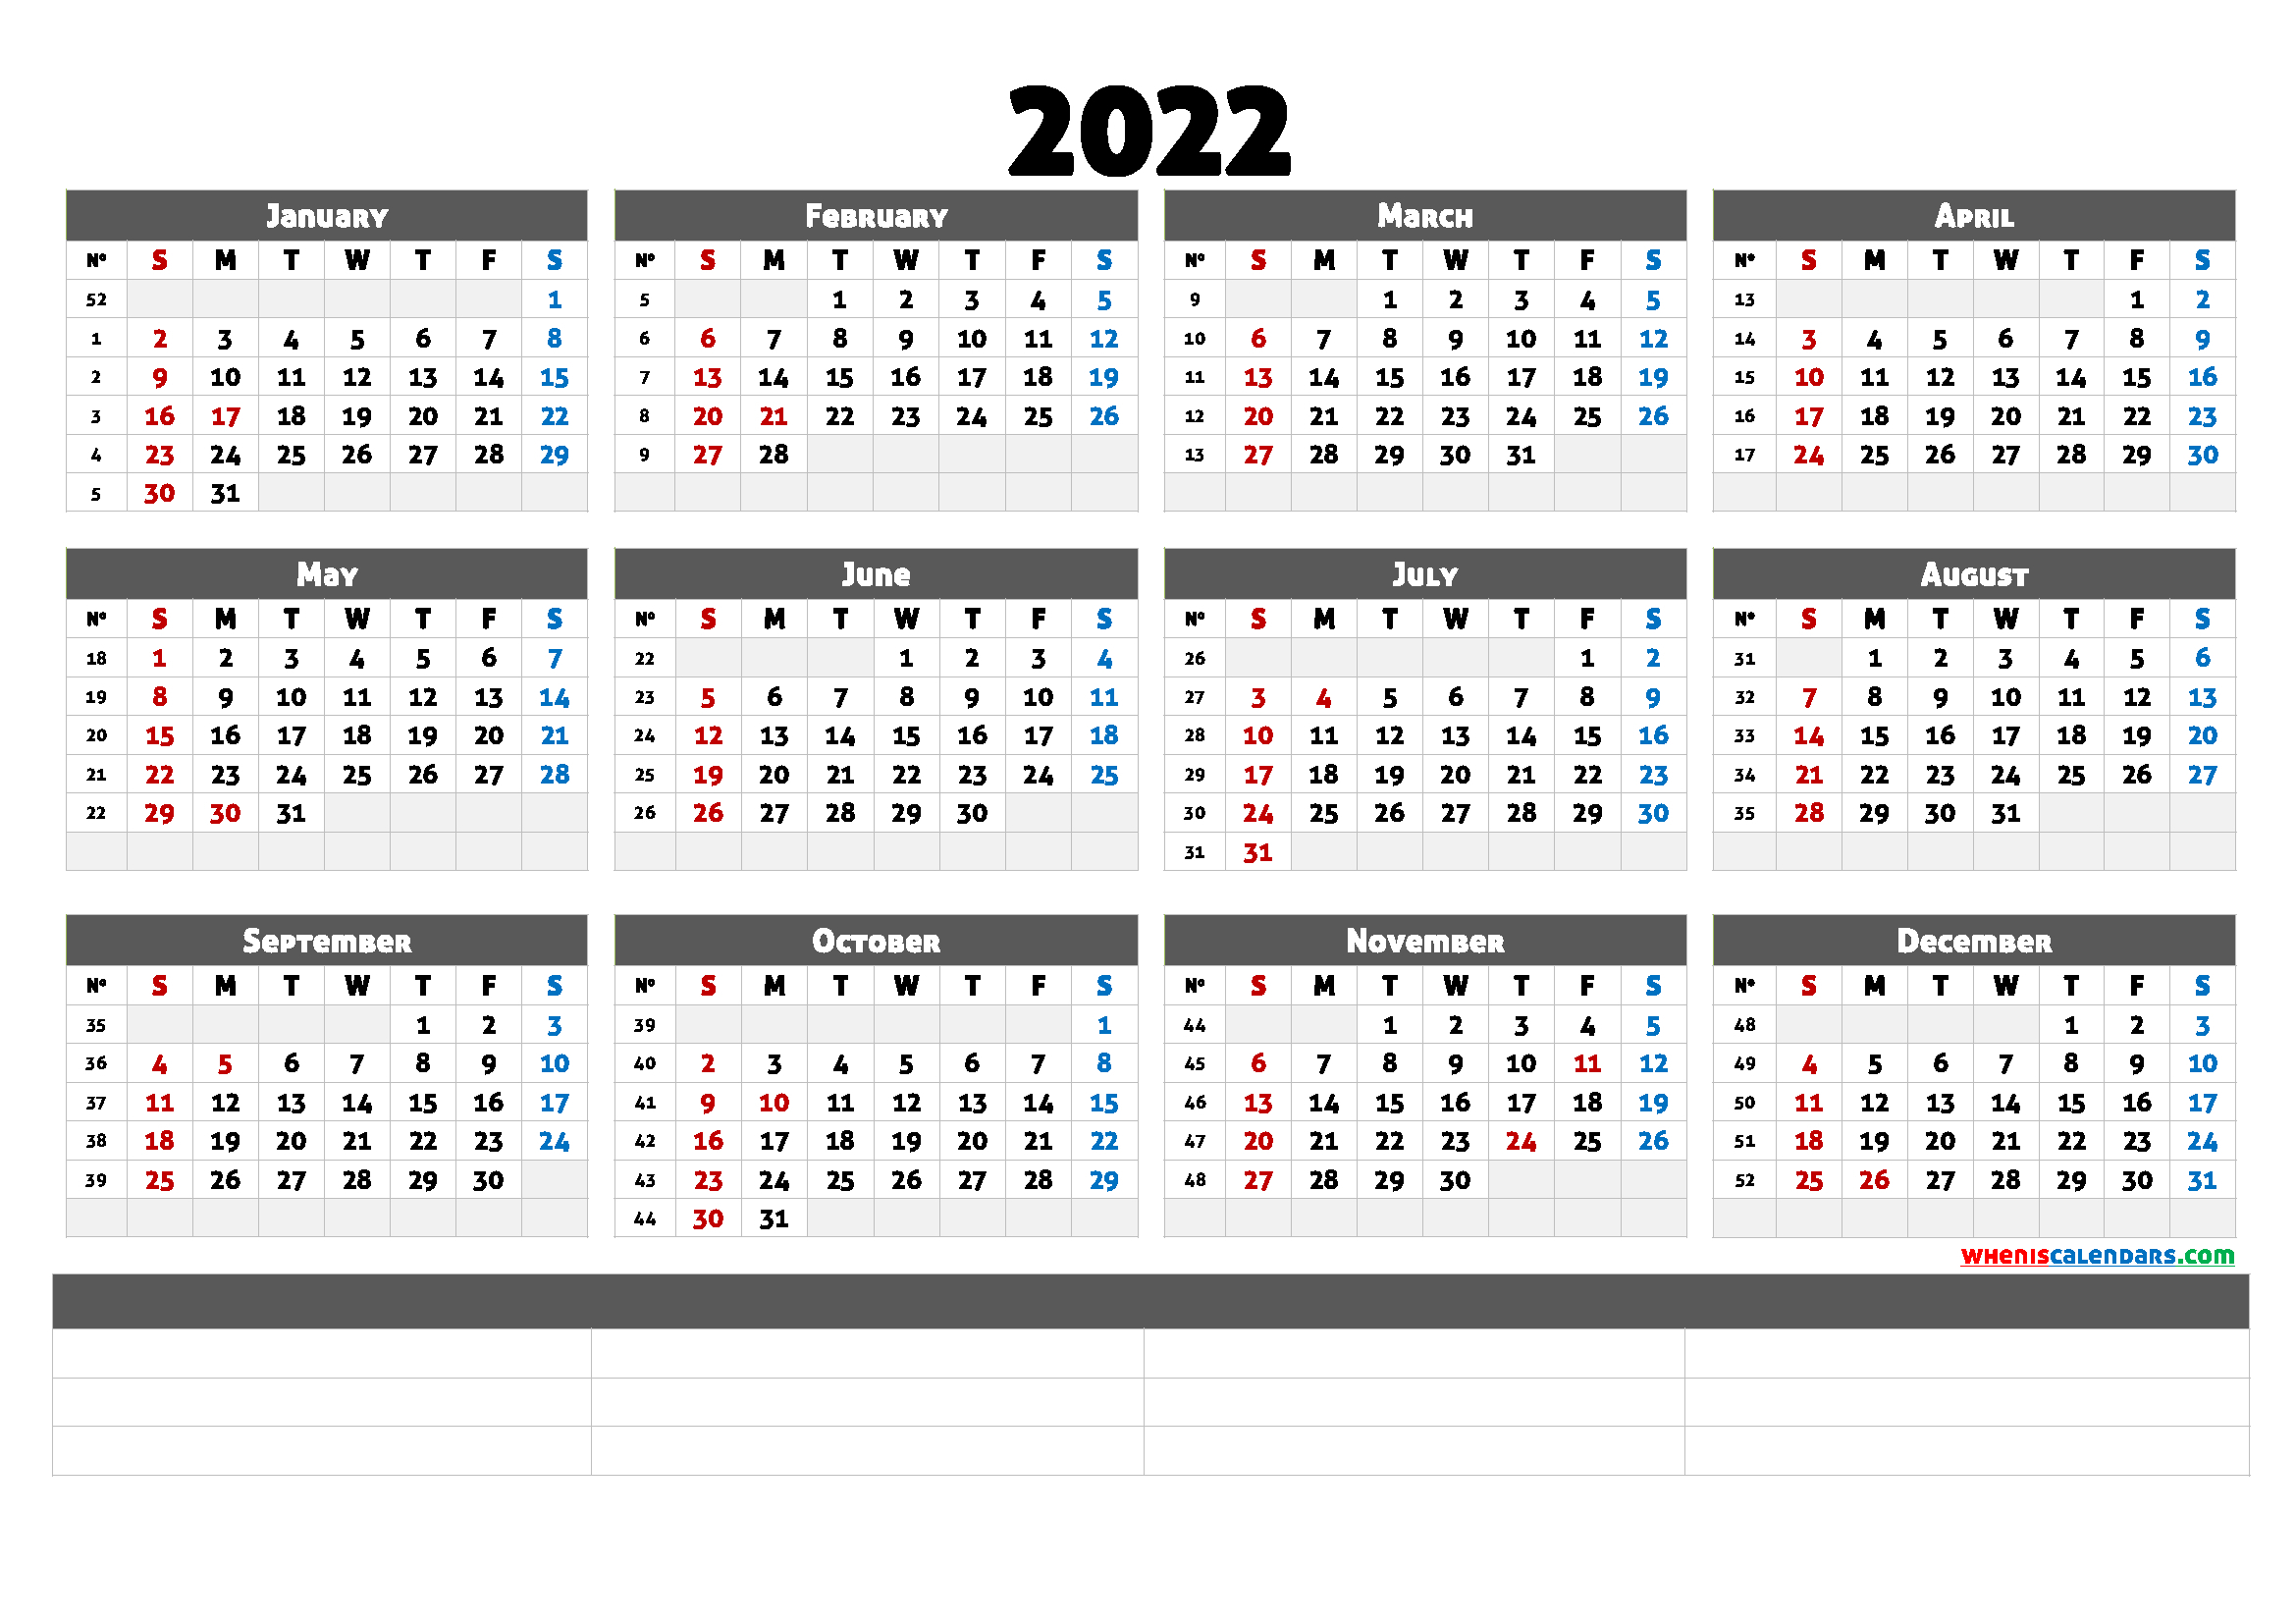 Nov 38 2022 Calendar - February 2022 Calendar